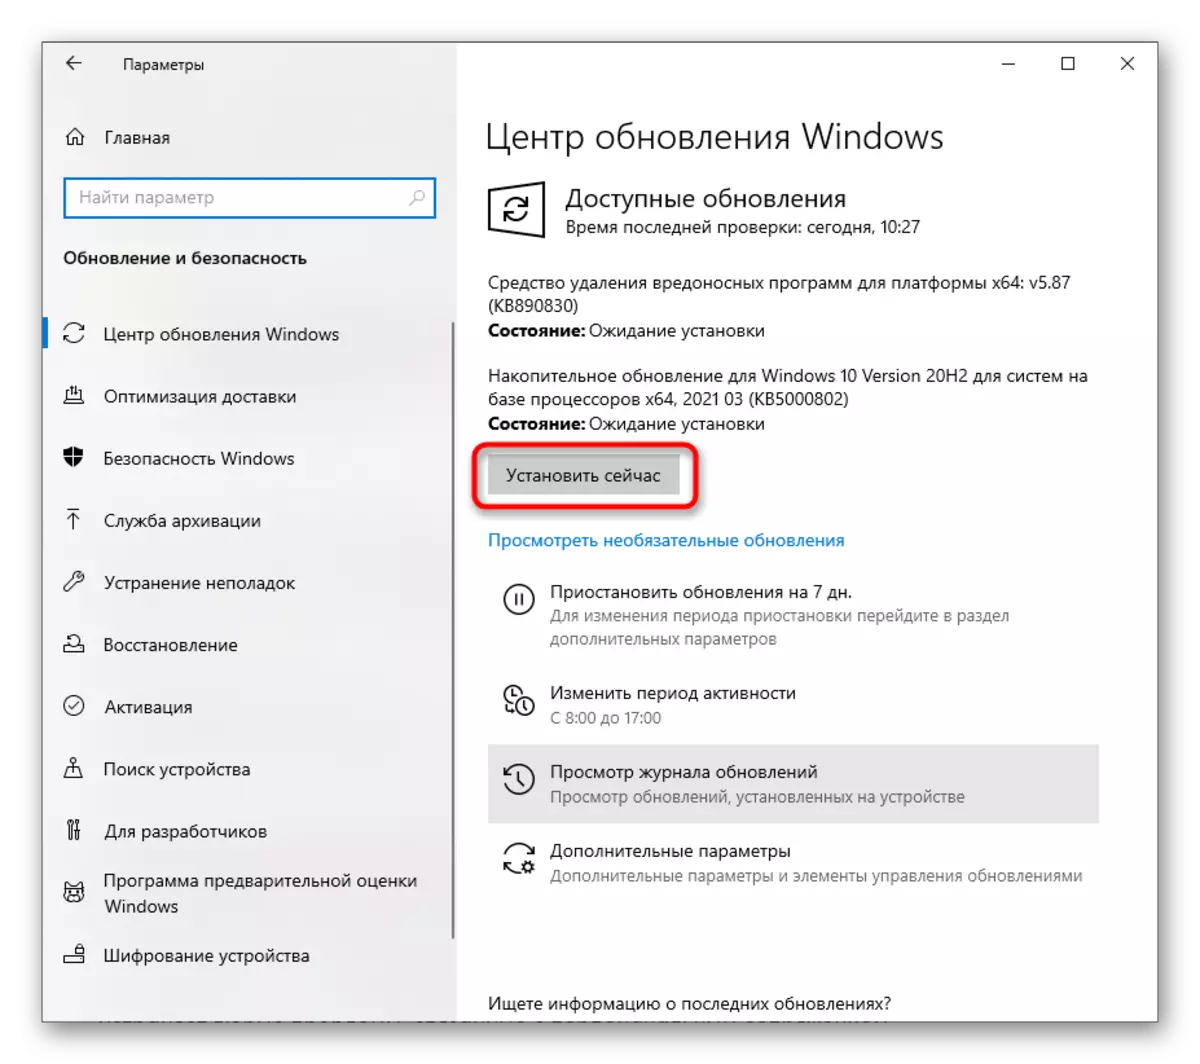 Yangilanishlarni Windows 10 bilan noutbukda Bluetooth ishini echish uchun yangilanishlarni boshlaydi